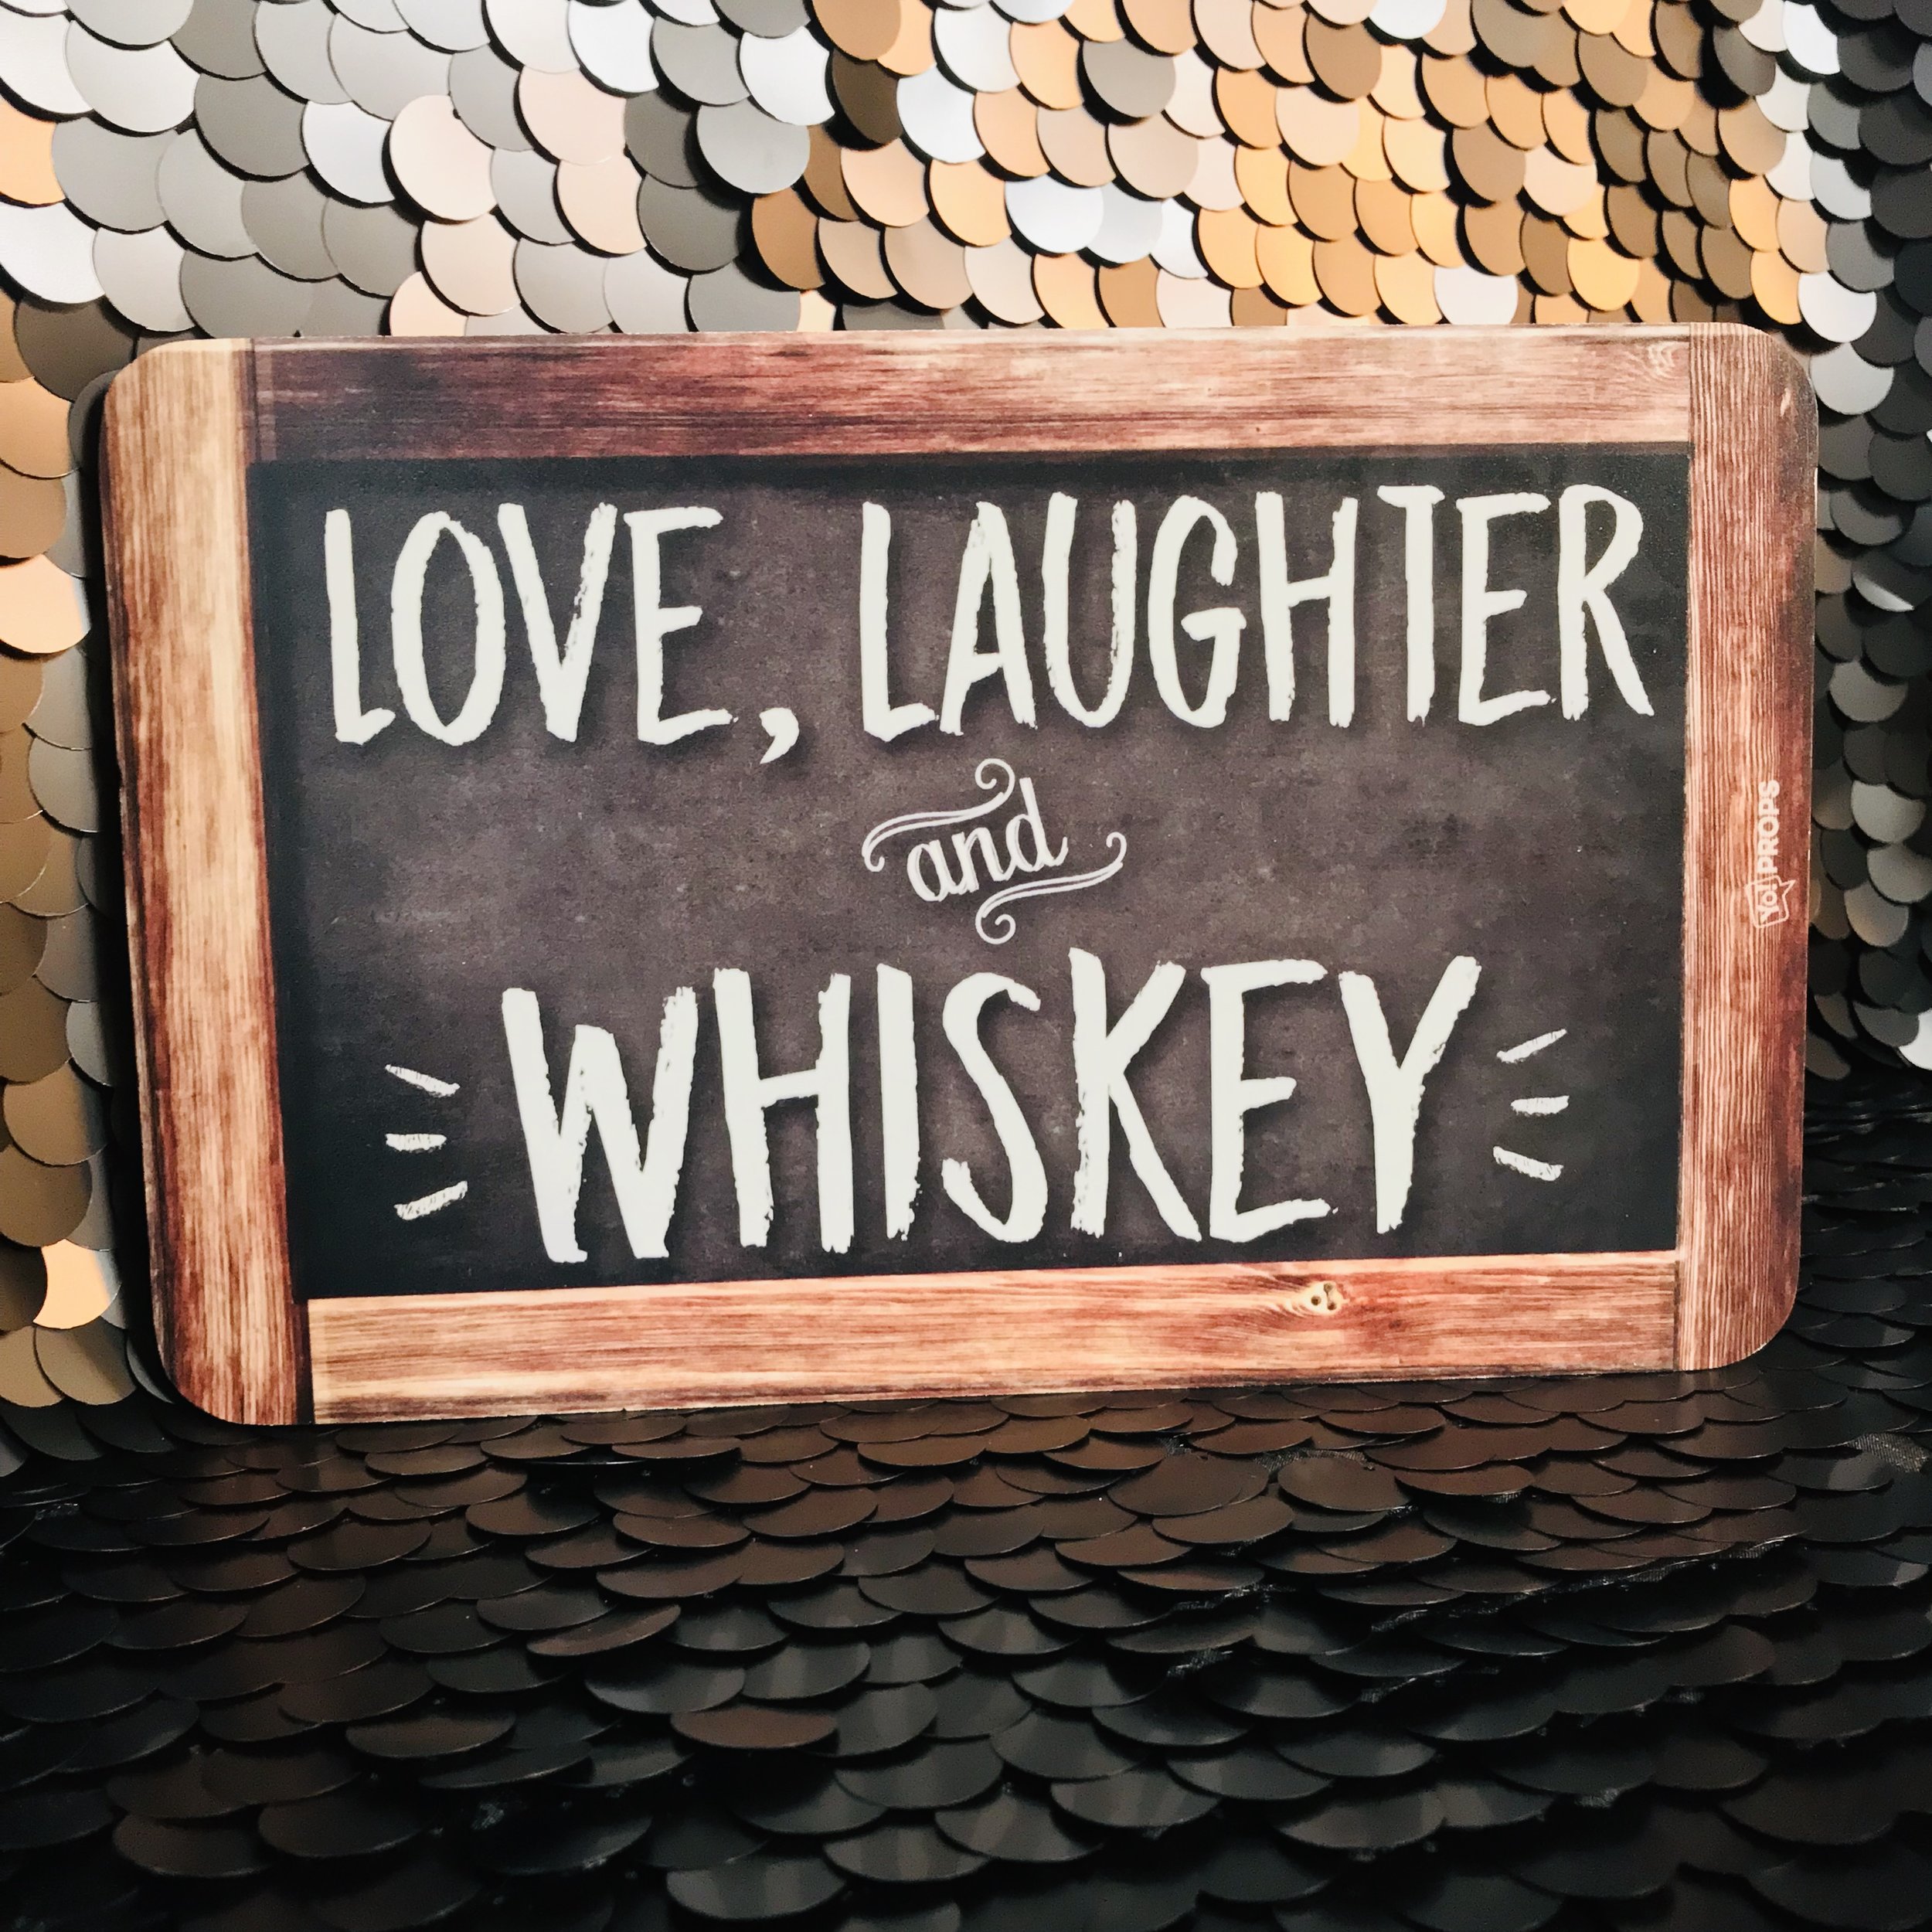 Love laughter whiskey.jpg